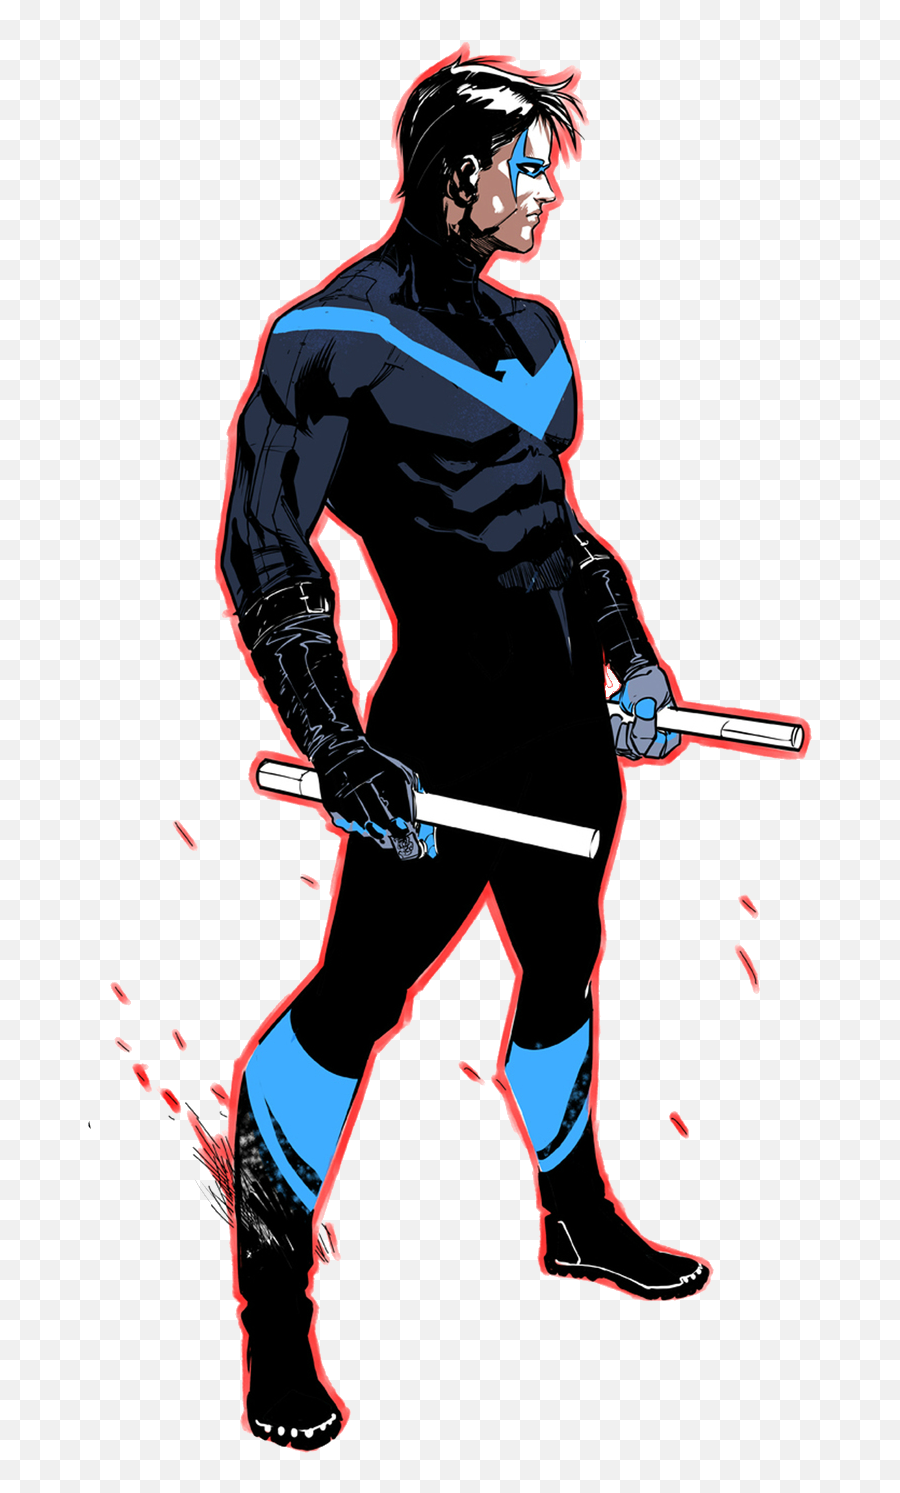 Dick Grayson Dc Rebirth - Nightwing Dc Rebirth Costume Emoji,Nightwing Png